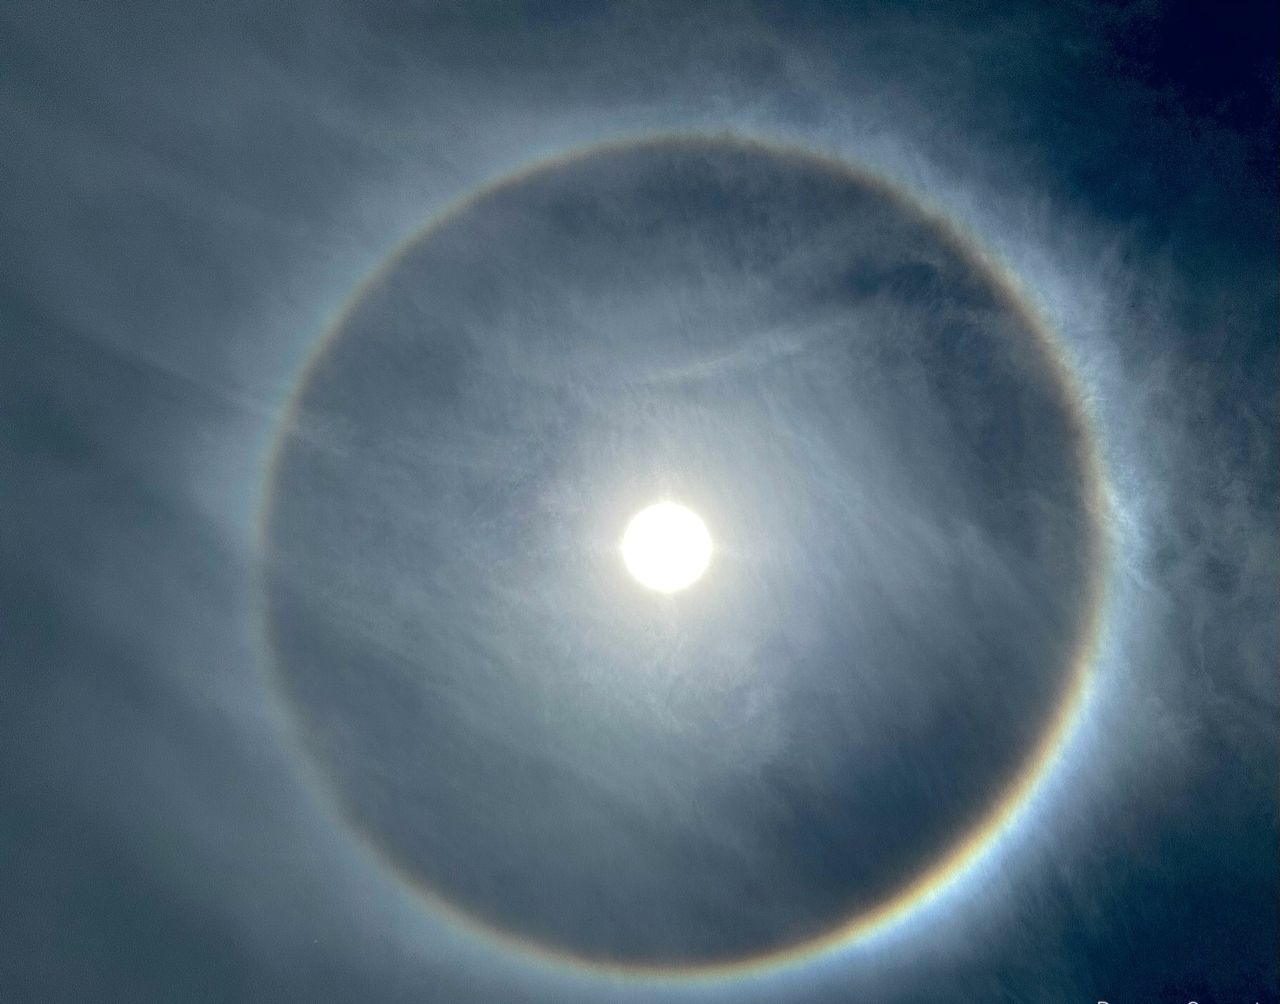 Un halo solar
Halo solar visto desde Venezuela
